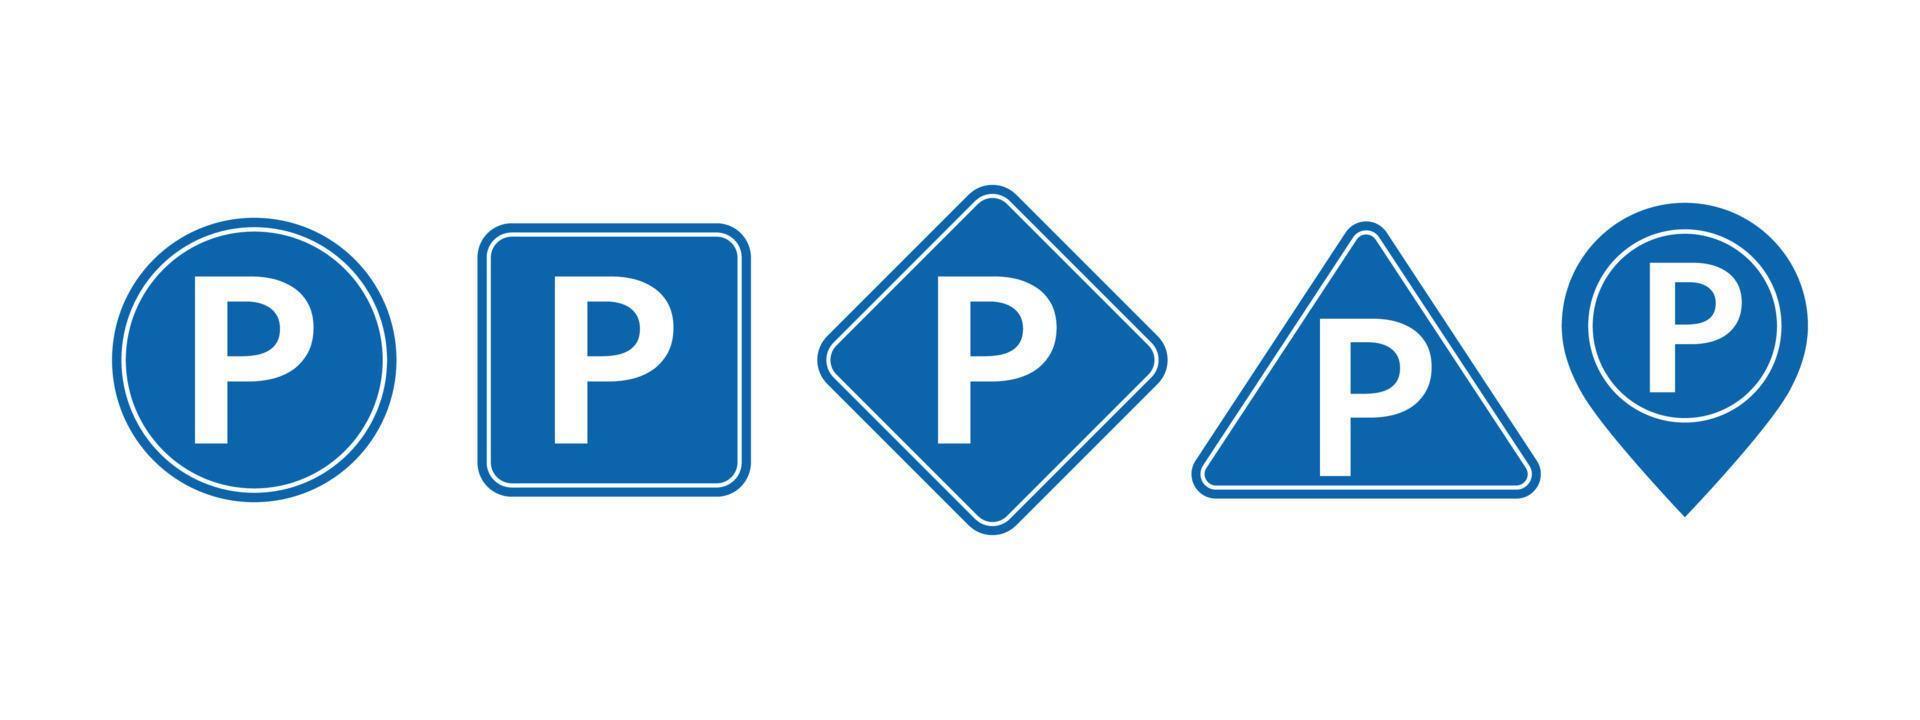 vector de señal de estacionamiento sobre fondo blanco